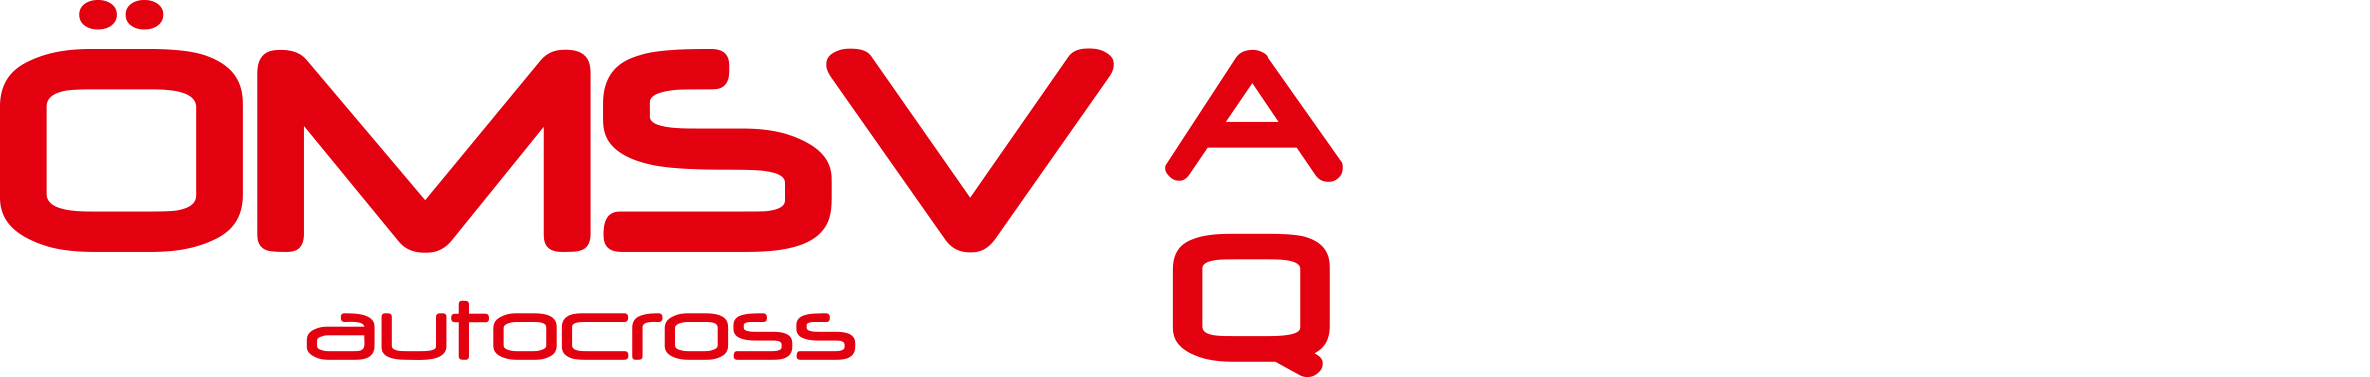 oemsv Logo quer weiß